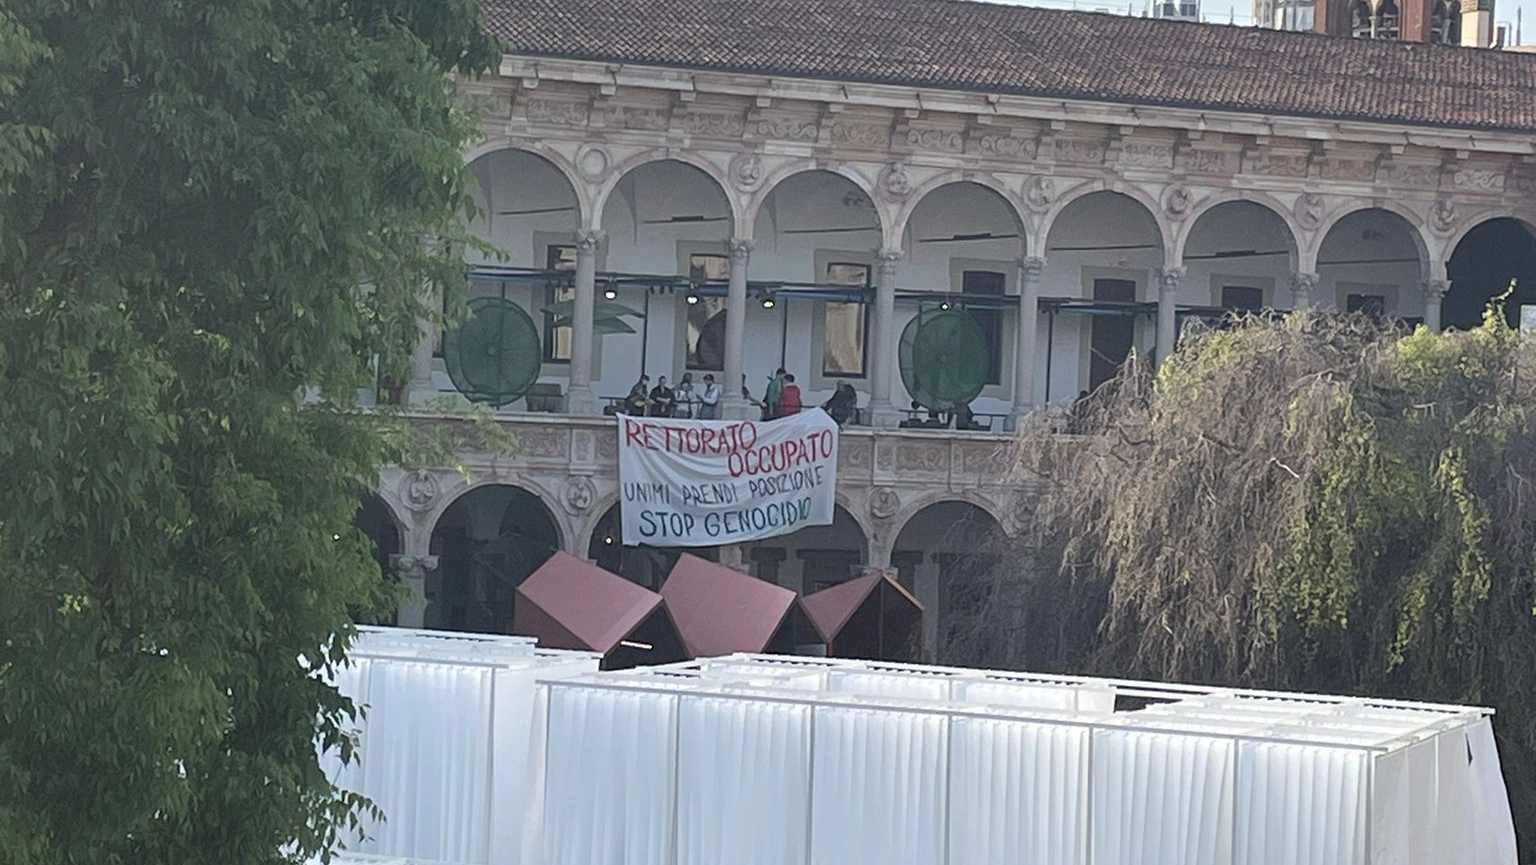 Il blitz di una ventina di manifestanti: “L’università prenda posizione, stop al genocidio”. La richiesta al futuro rettore